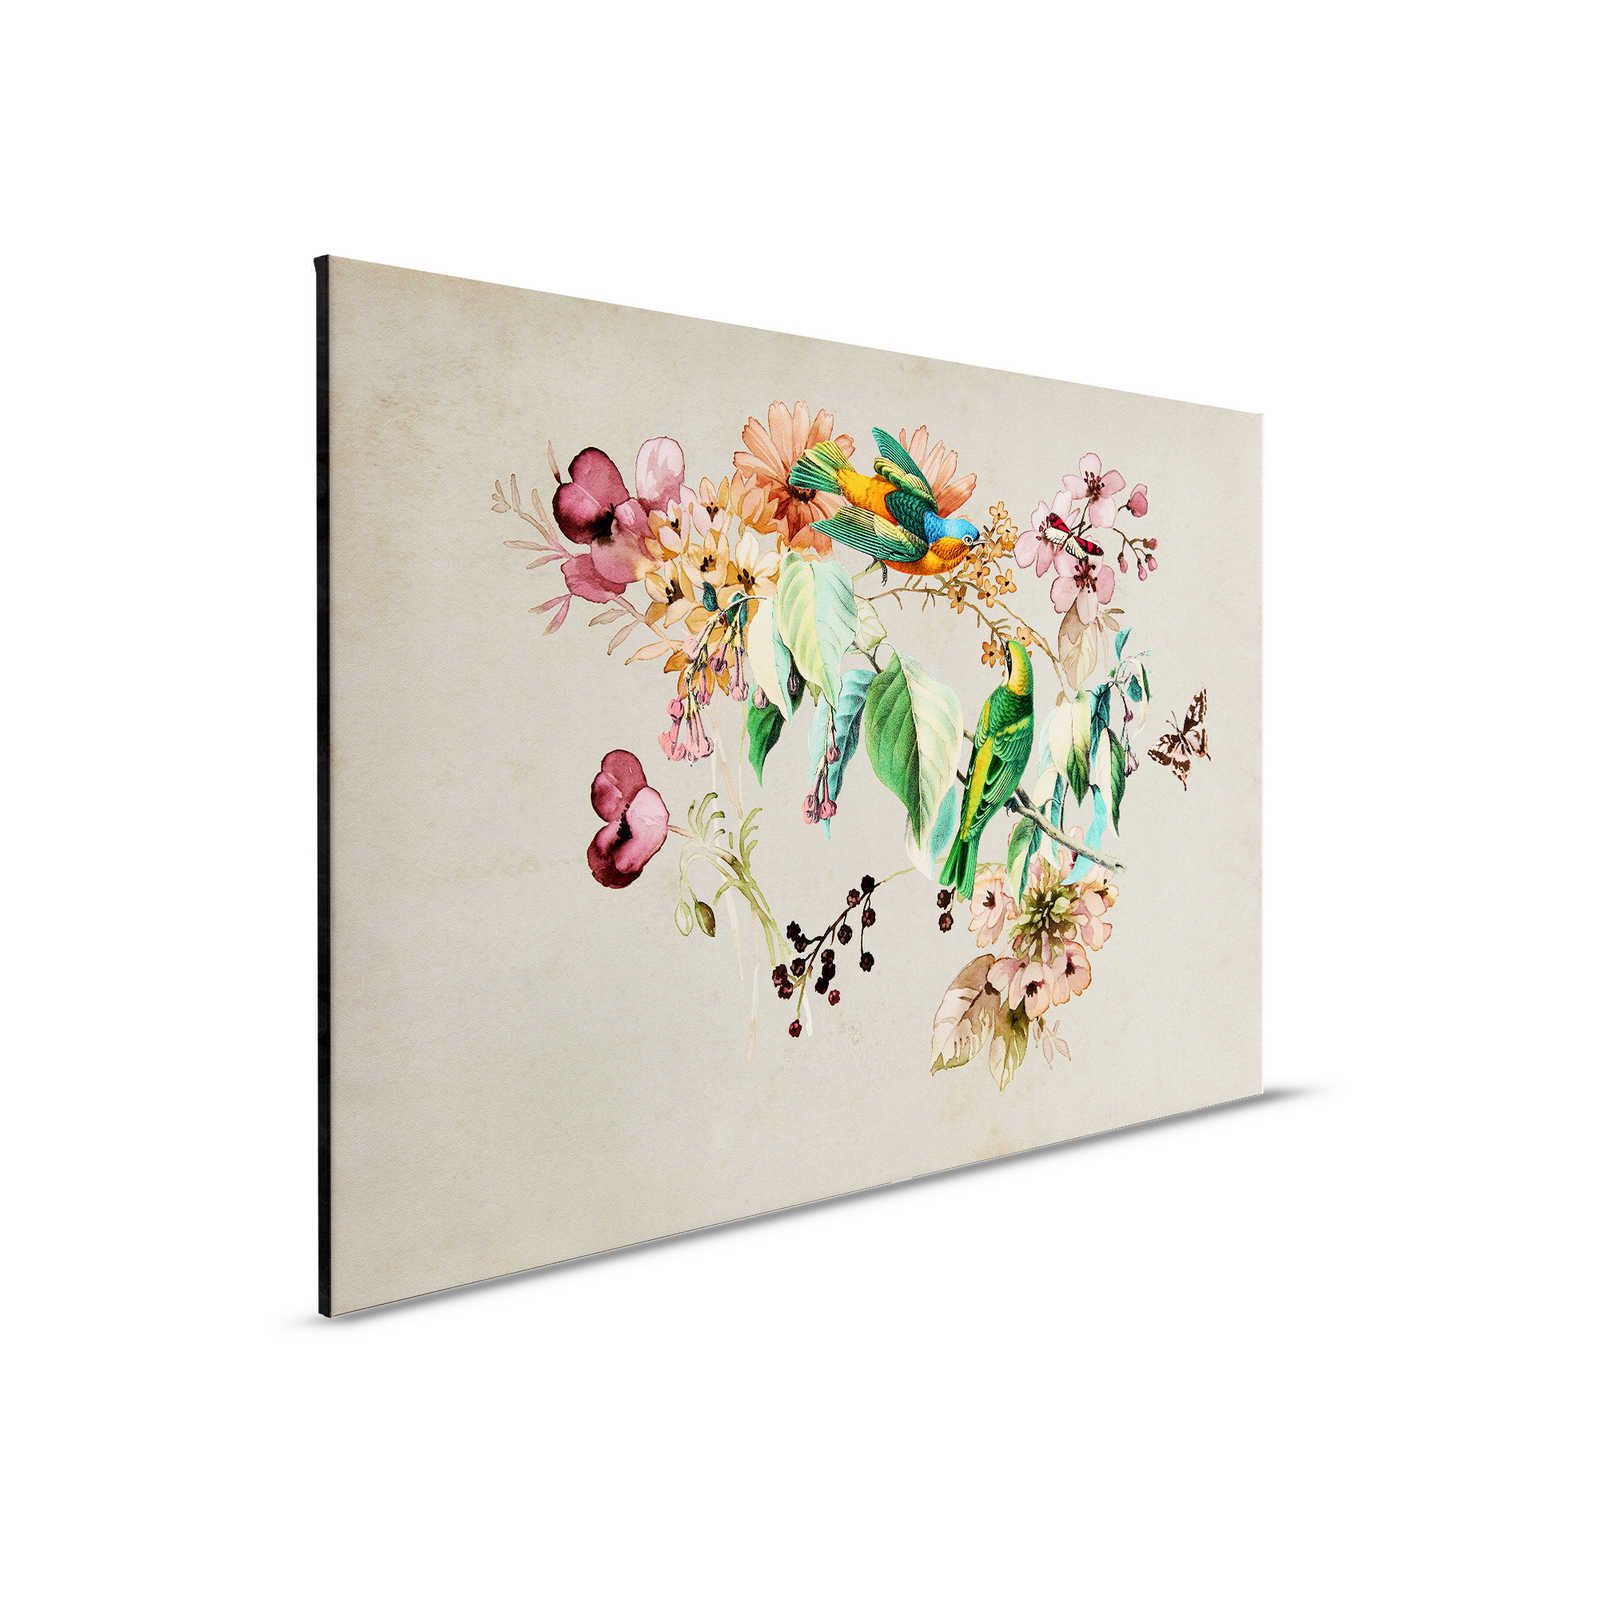 Nido de amor 1 - Cuadro en lienzo con flores de acuarela y pájaros de colores - 0,90 m x 0,60 m
